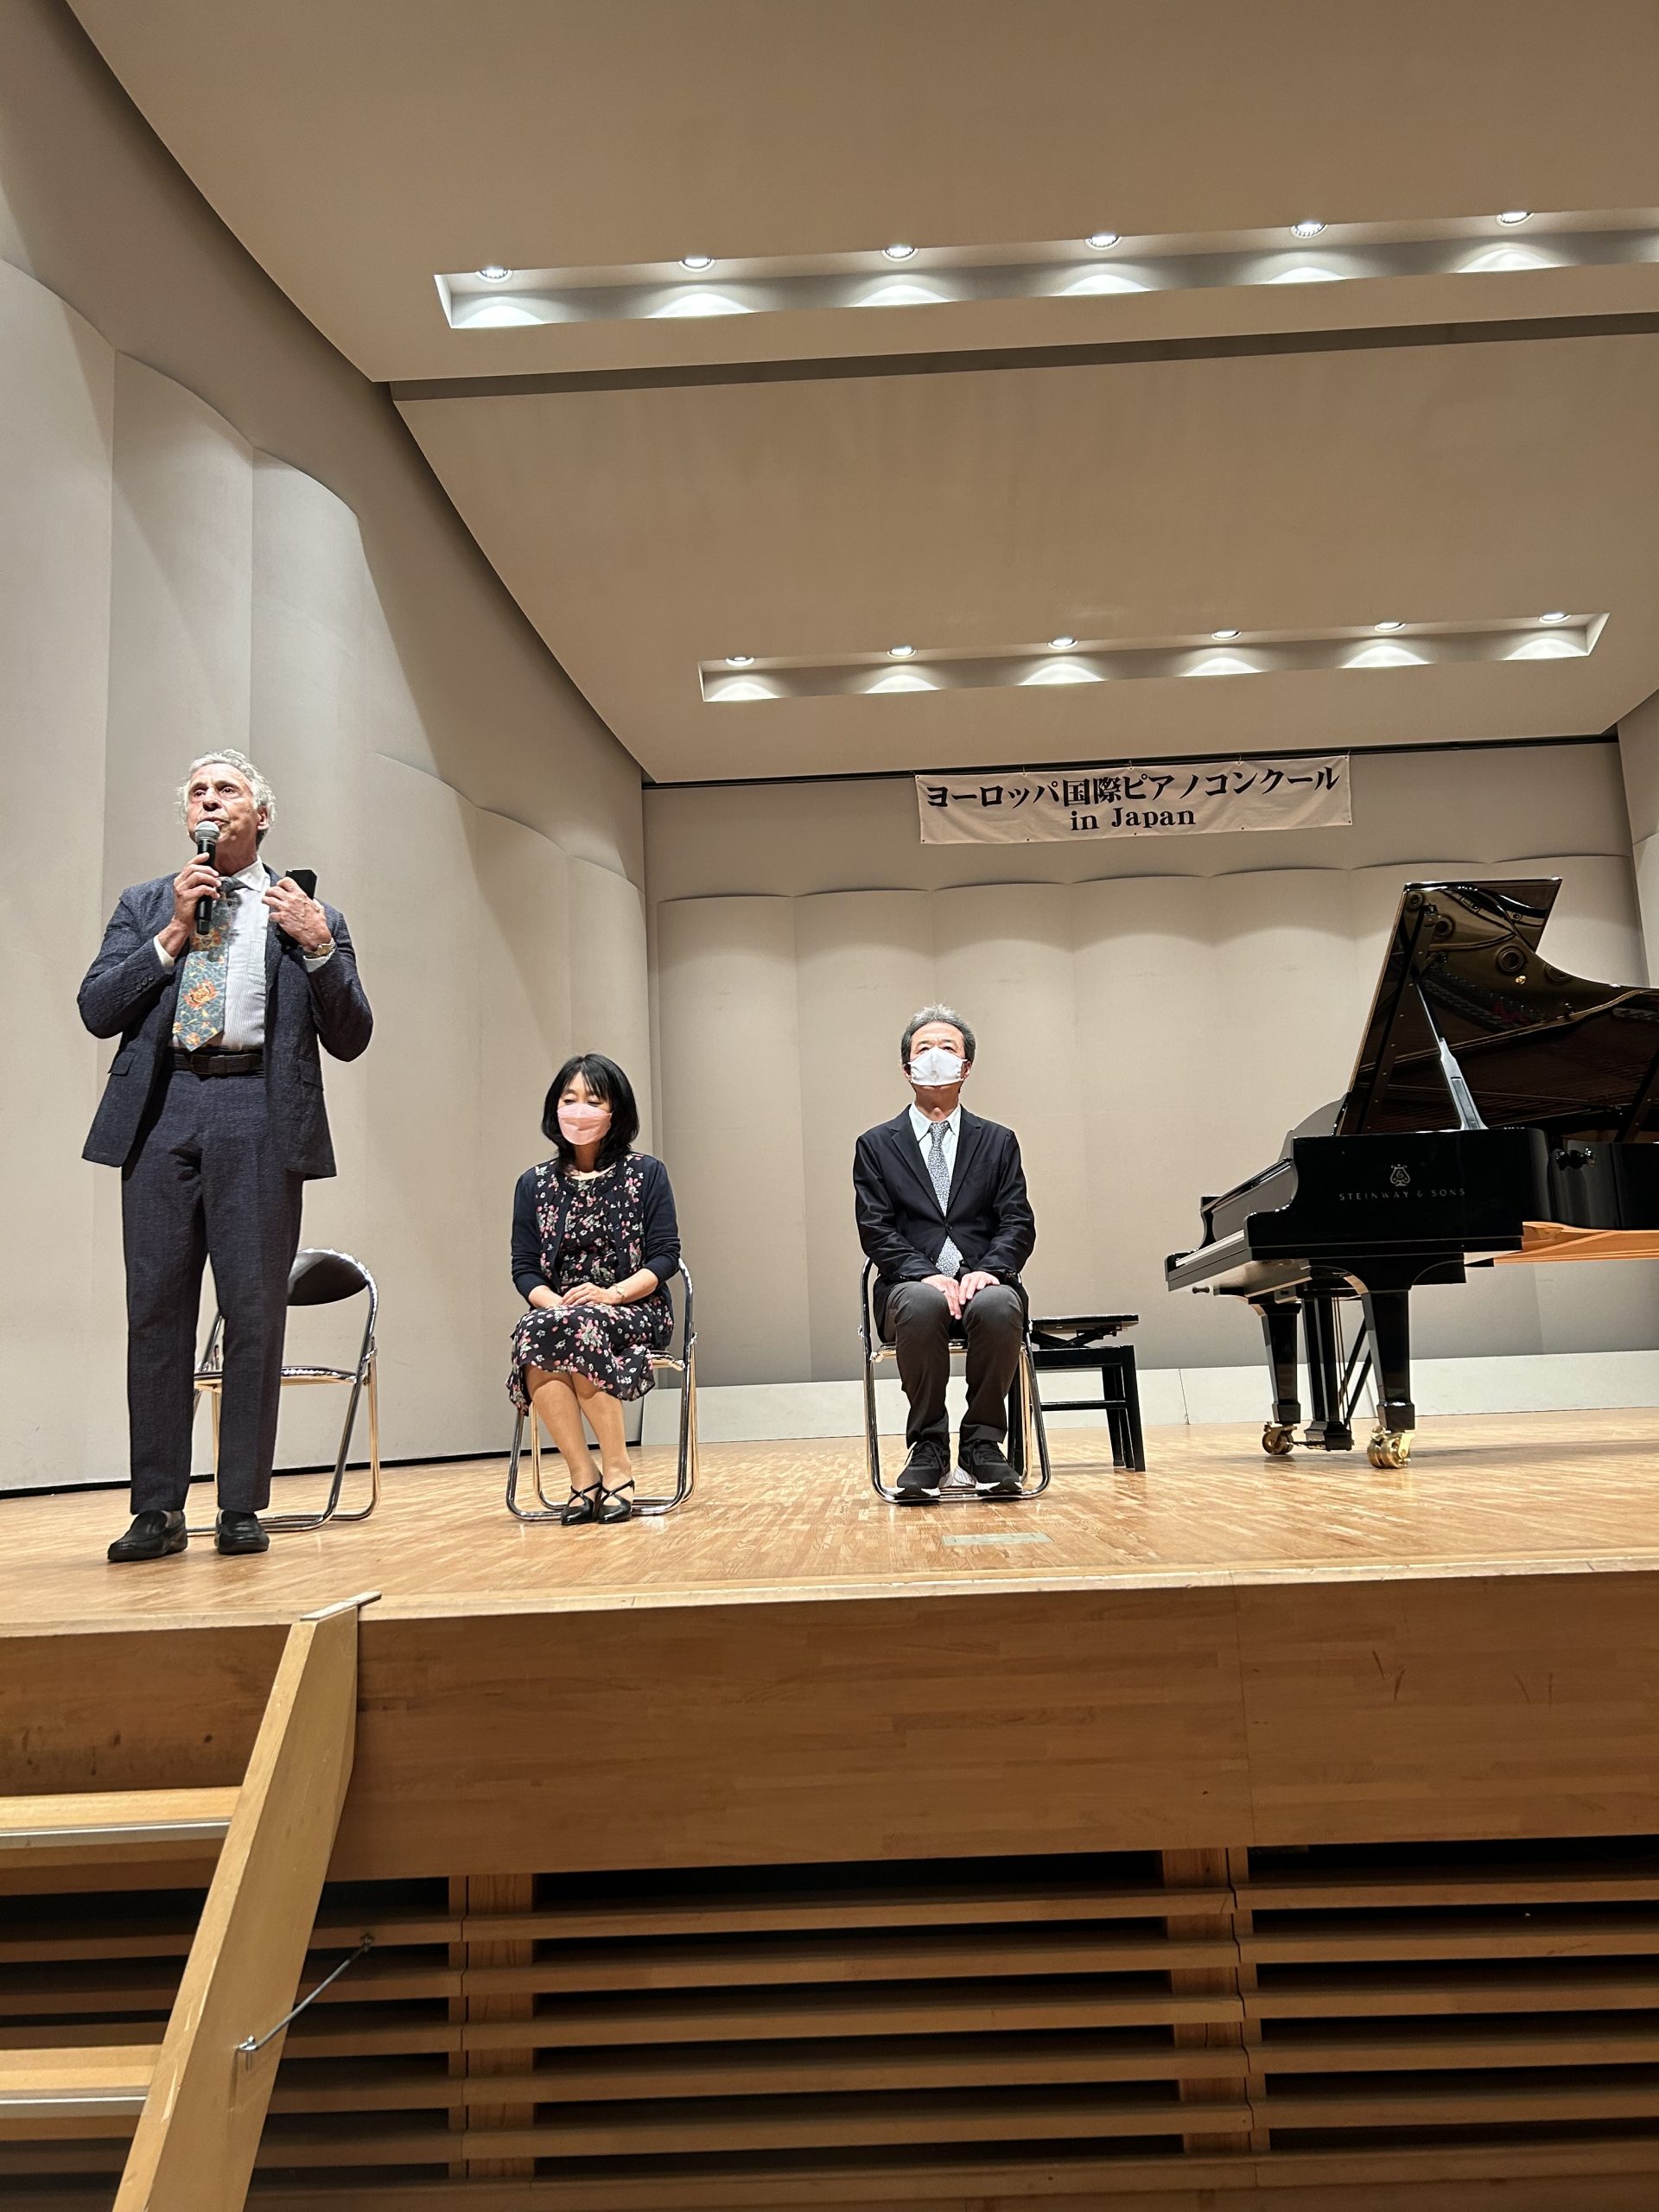 第14回ヨーロッパ国際ピアノコンクール in Japan 熊本地区予選